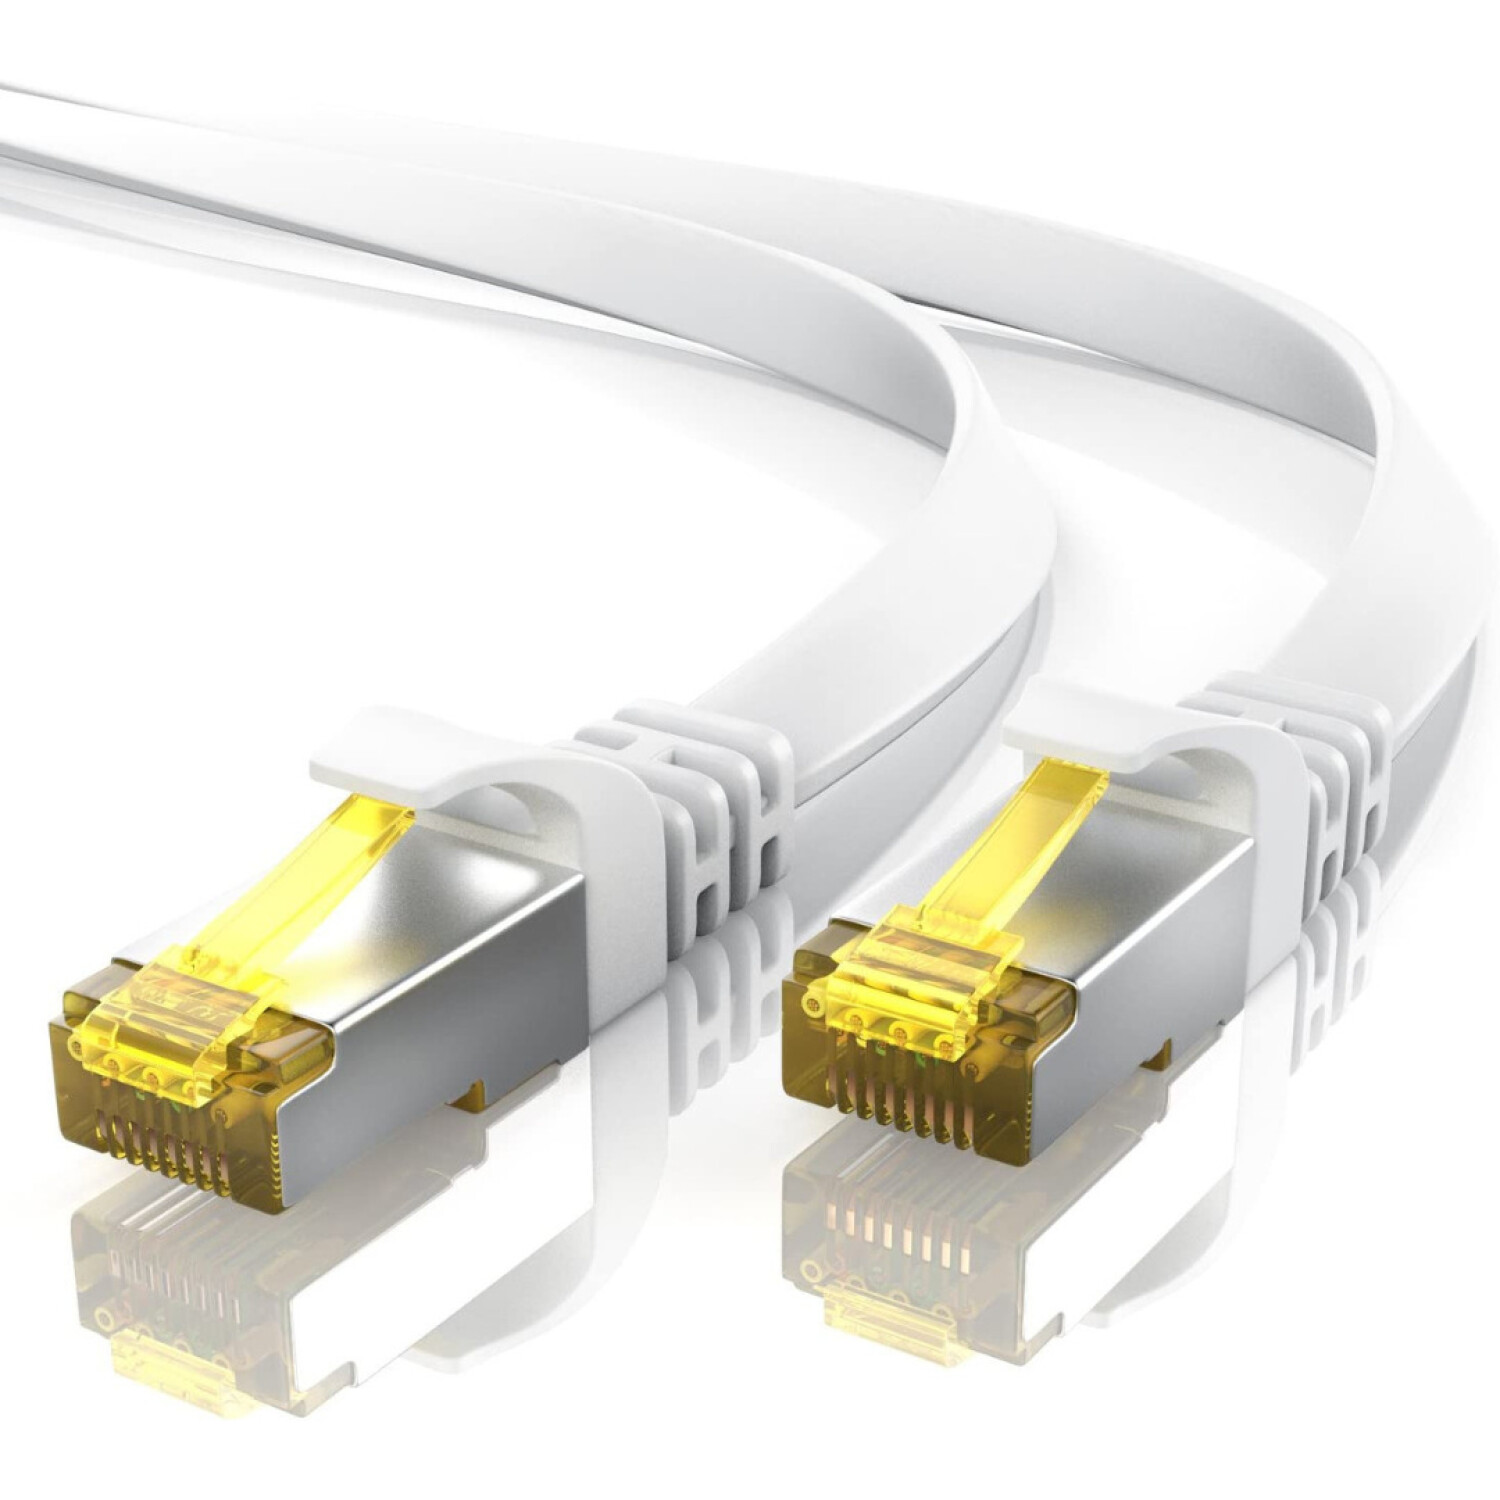 Cable De Red Ethernet Internet 10 Metros Rj45 Cat 7 Plano